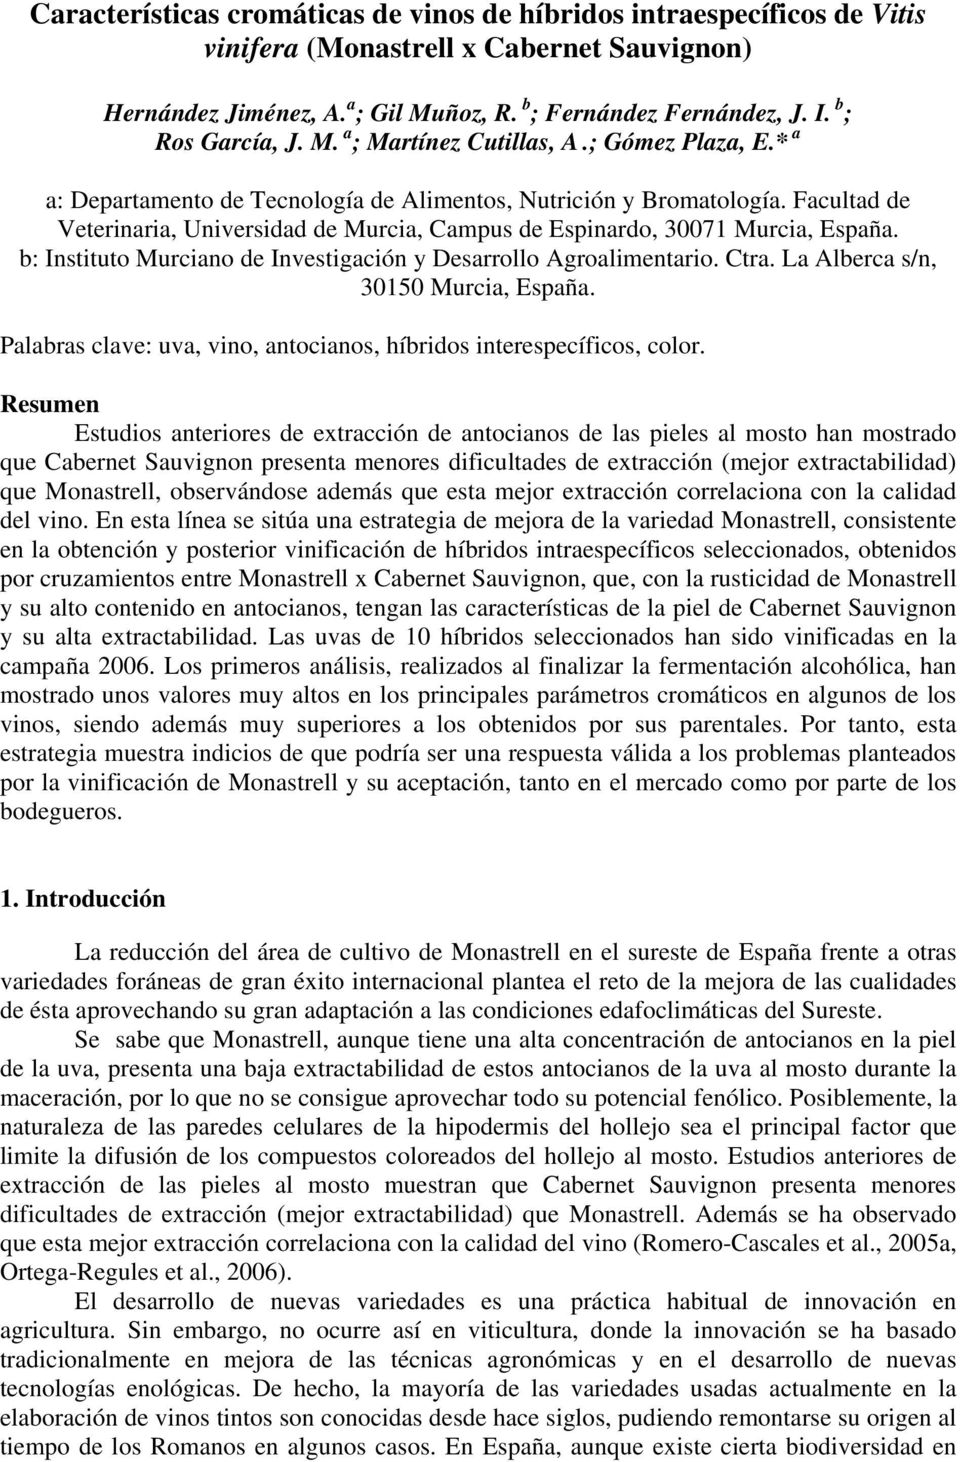 b: Instituto Murciano de Investigación y Desarrollo Agroalimentario. Ctra. La Alberca s/n, 30150 Murcia, España. Palabras clave: uva, vino, antocianos, híbridos interespecíficos, color.